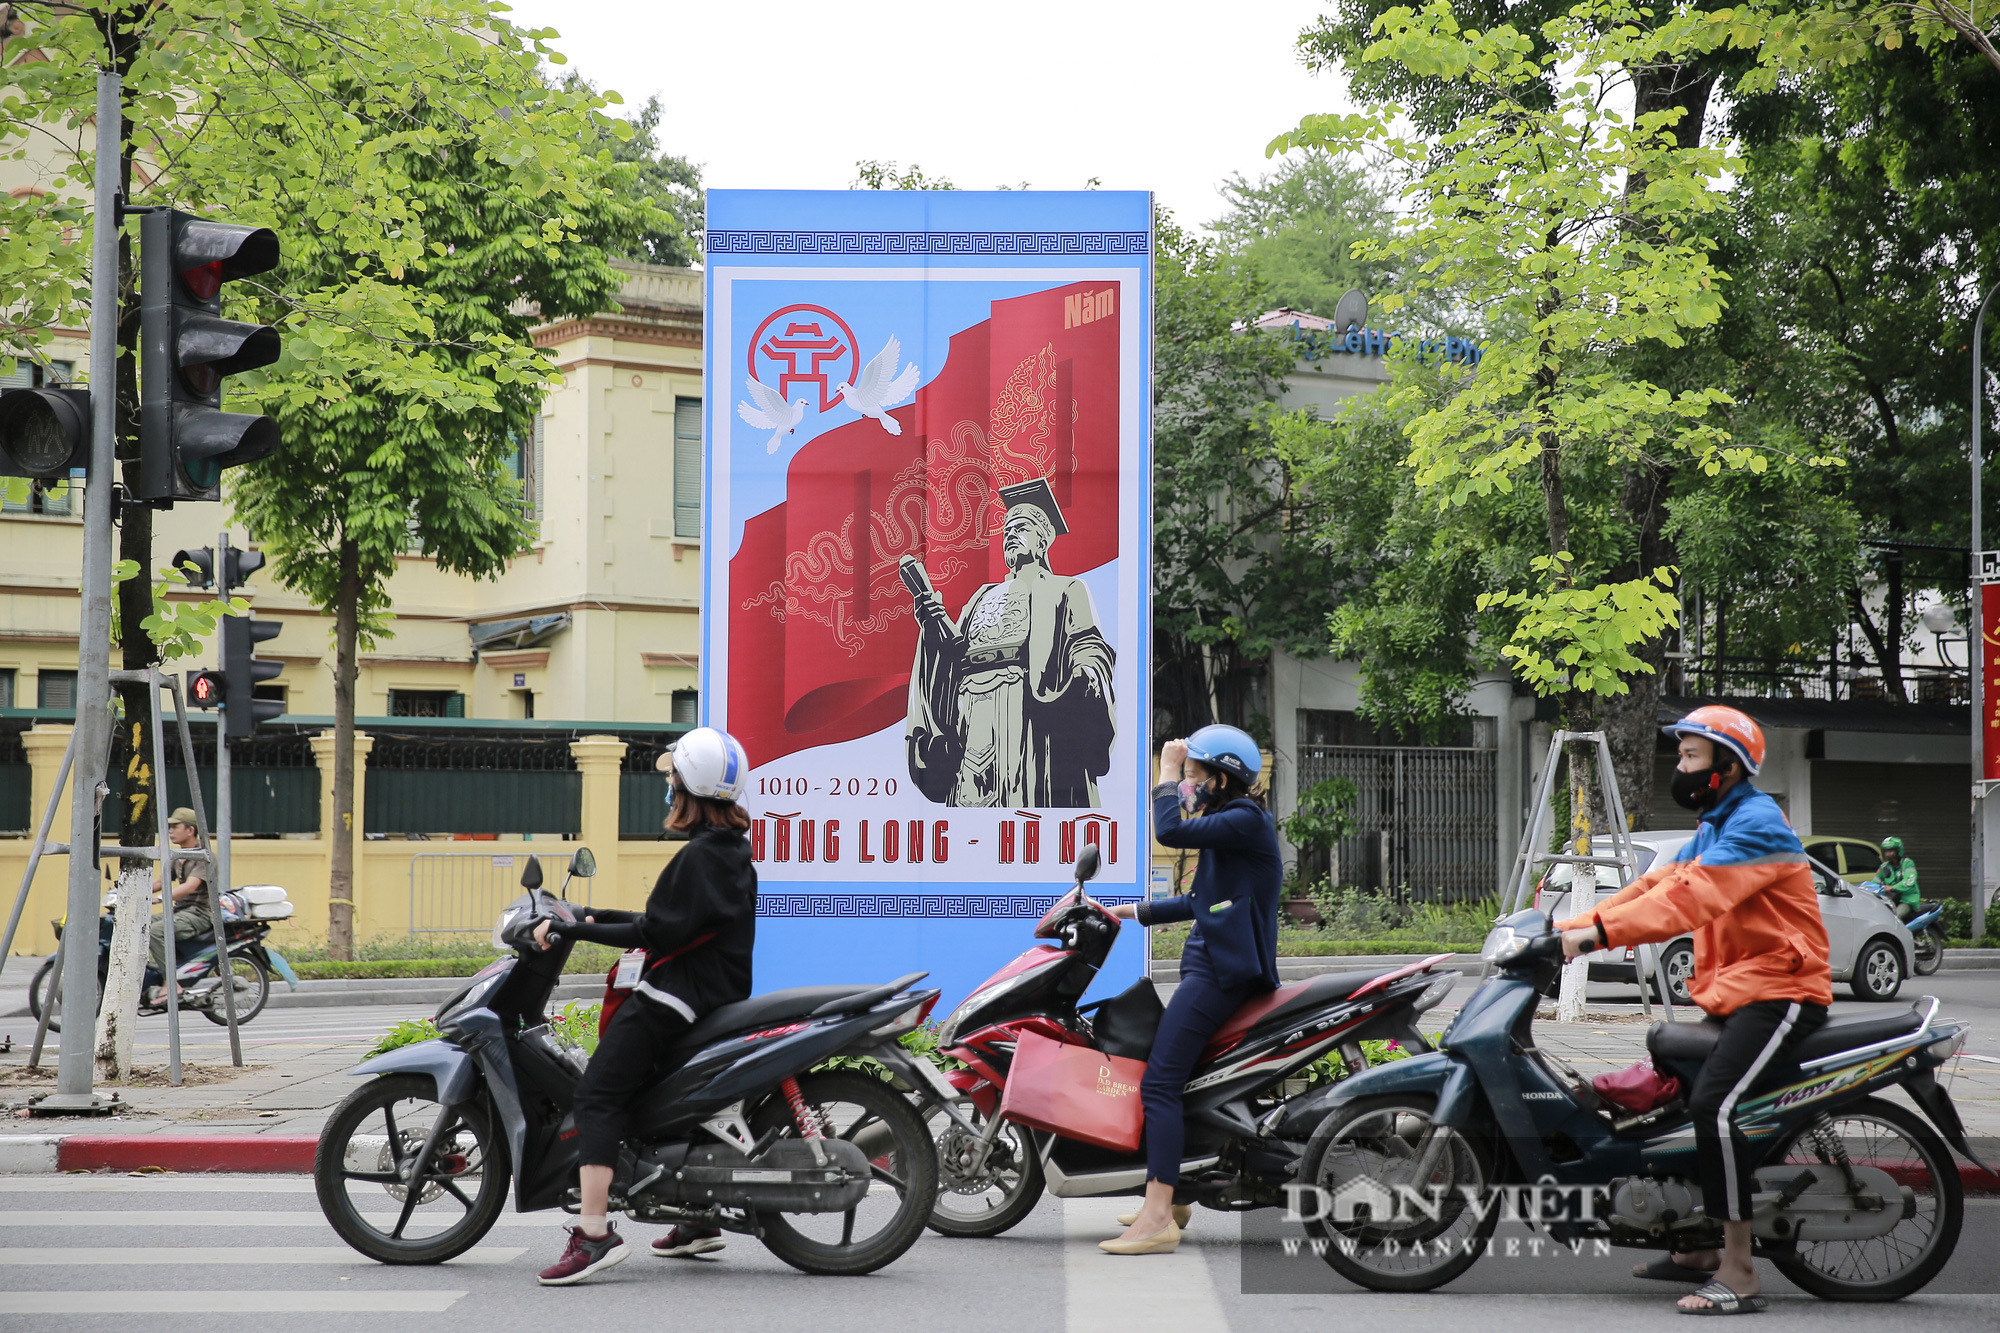 Đường phố muôn sắc màu chào mừng 1010 Thăng Long – Hà Nội - Ảnh 10.